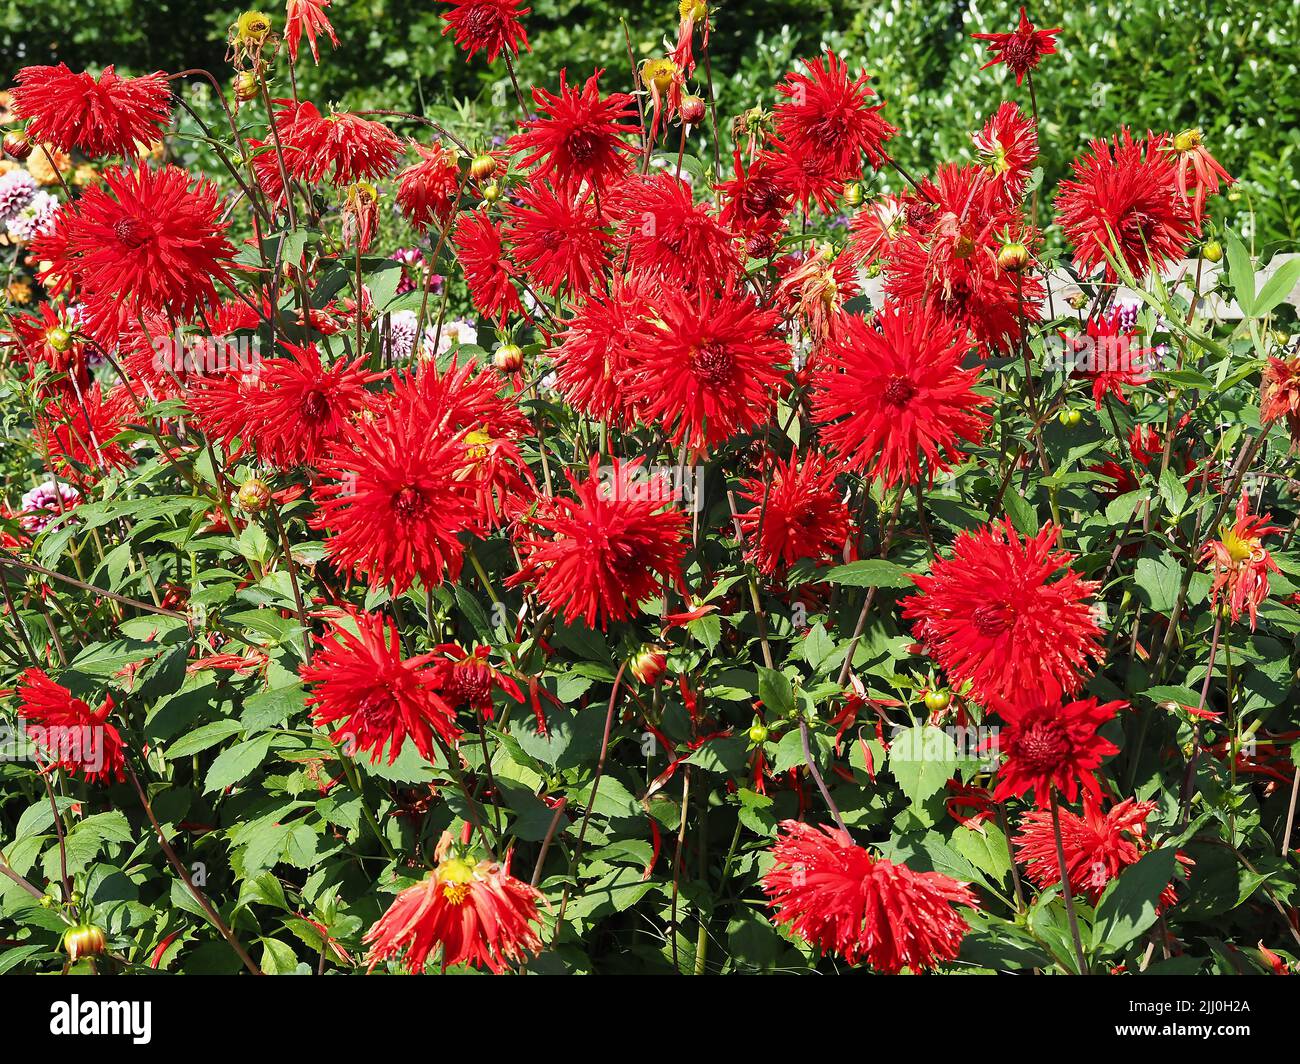 Red cactus Dahlias flowering in a garden Stock Photo